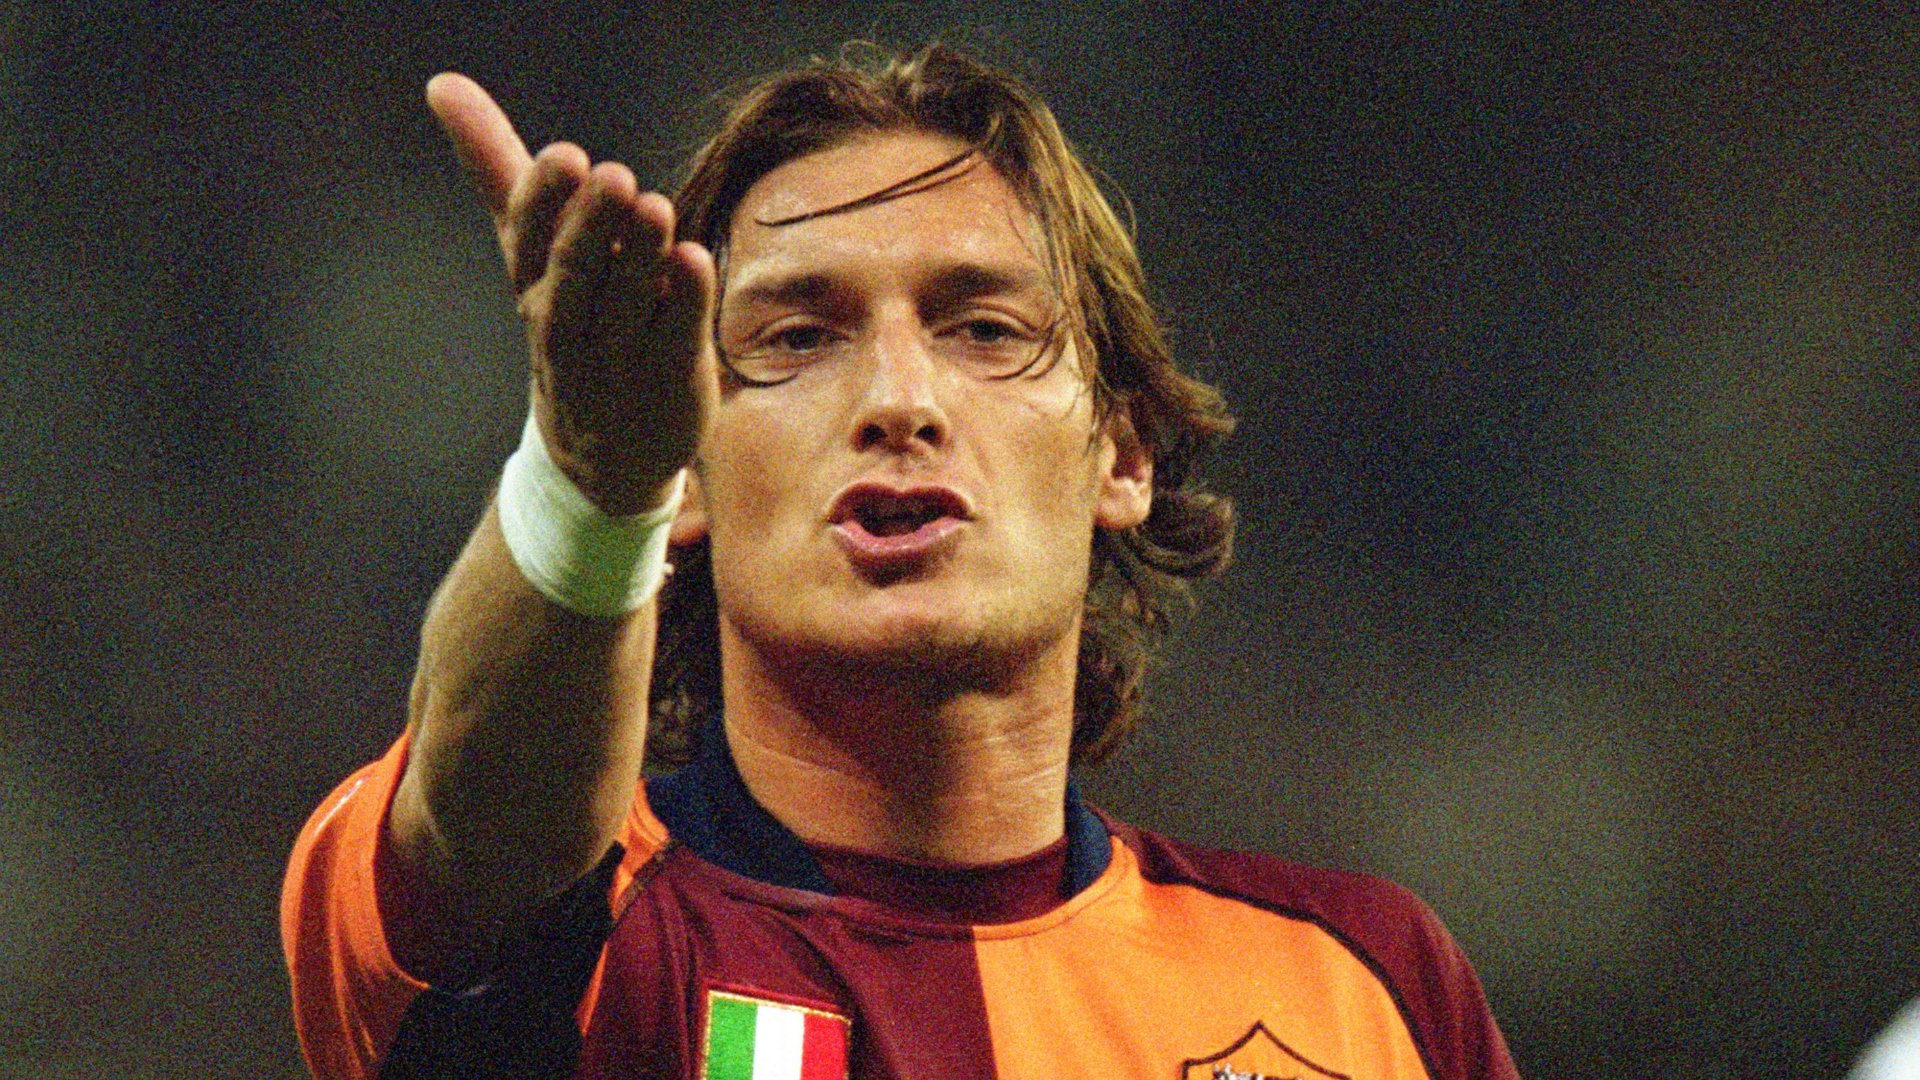 Francesco Totti entra nell’enciclopedia Treccani con il termine “Tottilatria”